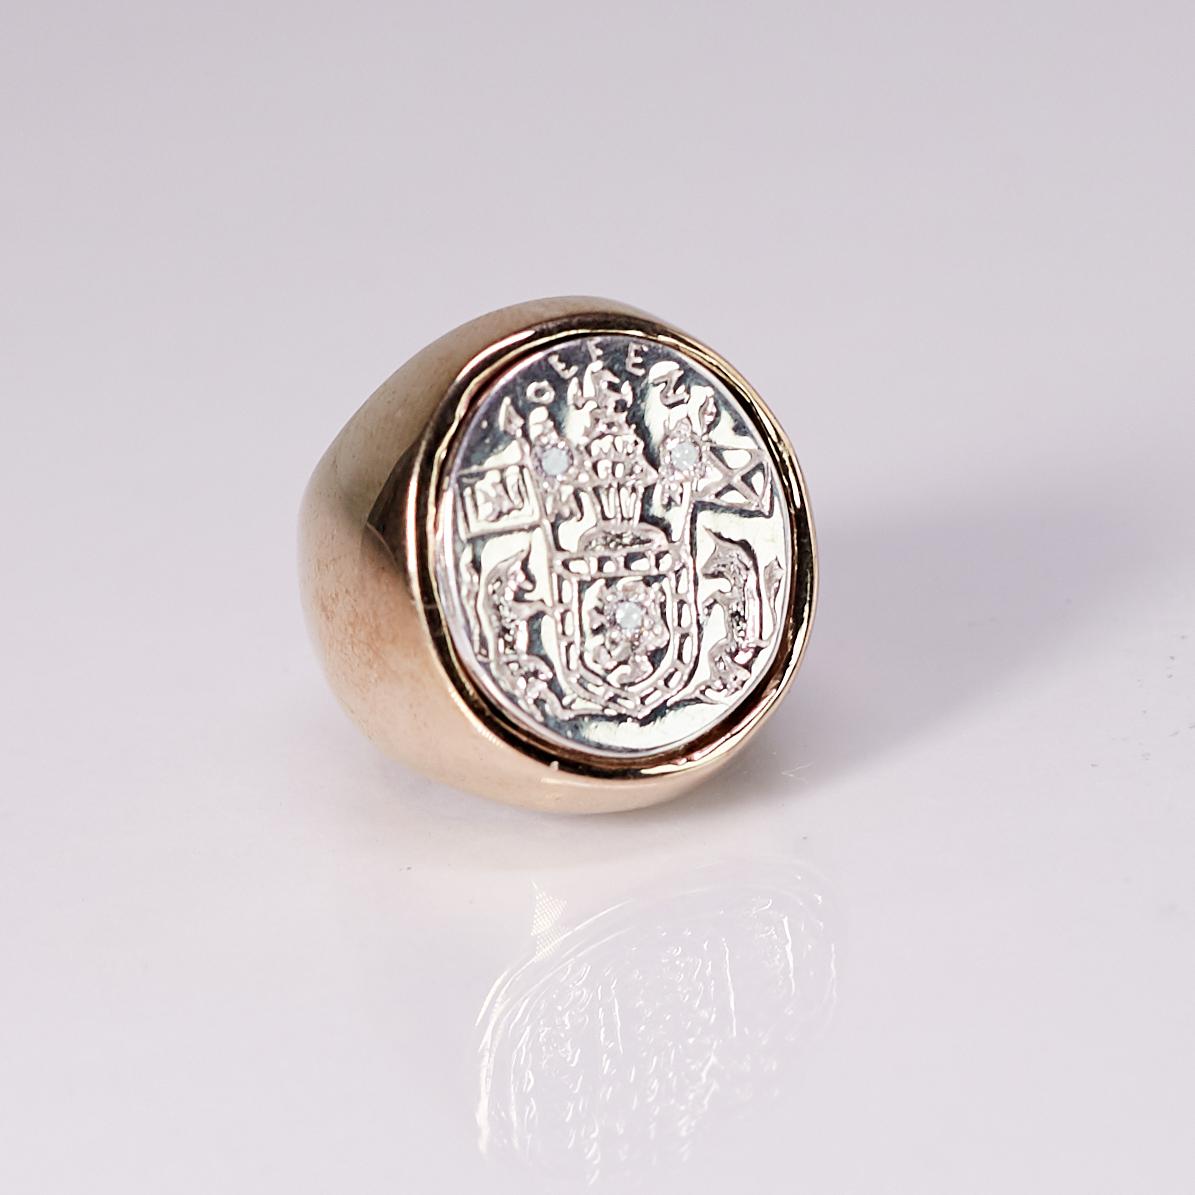 White Diamond Crest Signet Ring Sterling Silber Bronze J Dauphin kann von Frauen oder Männern getragen werden.

Inspiriert durch den Ring der Königin Maria von Schottland. Goldener Siegelring; graviert; Schultern mit Blumen und Blättern verziert.